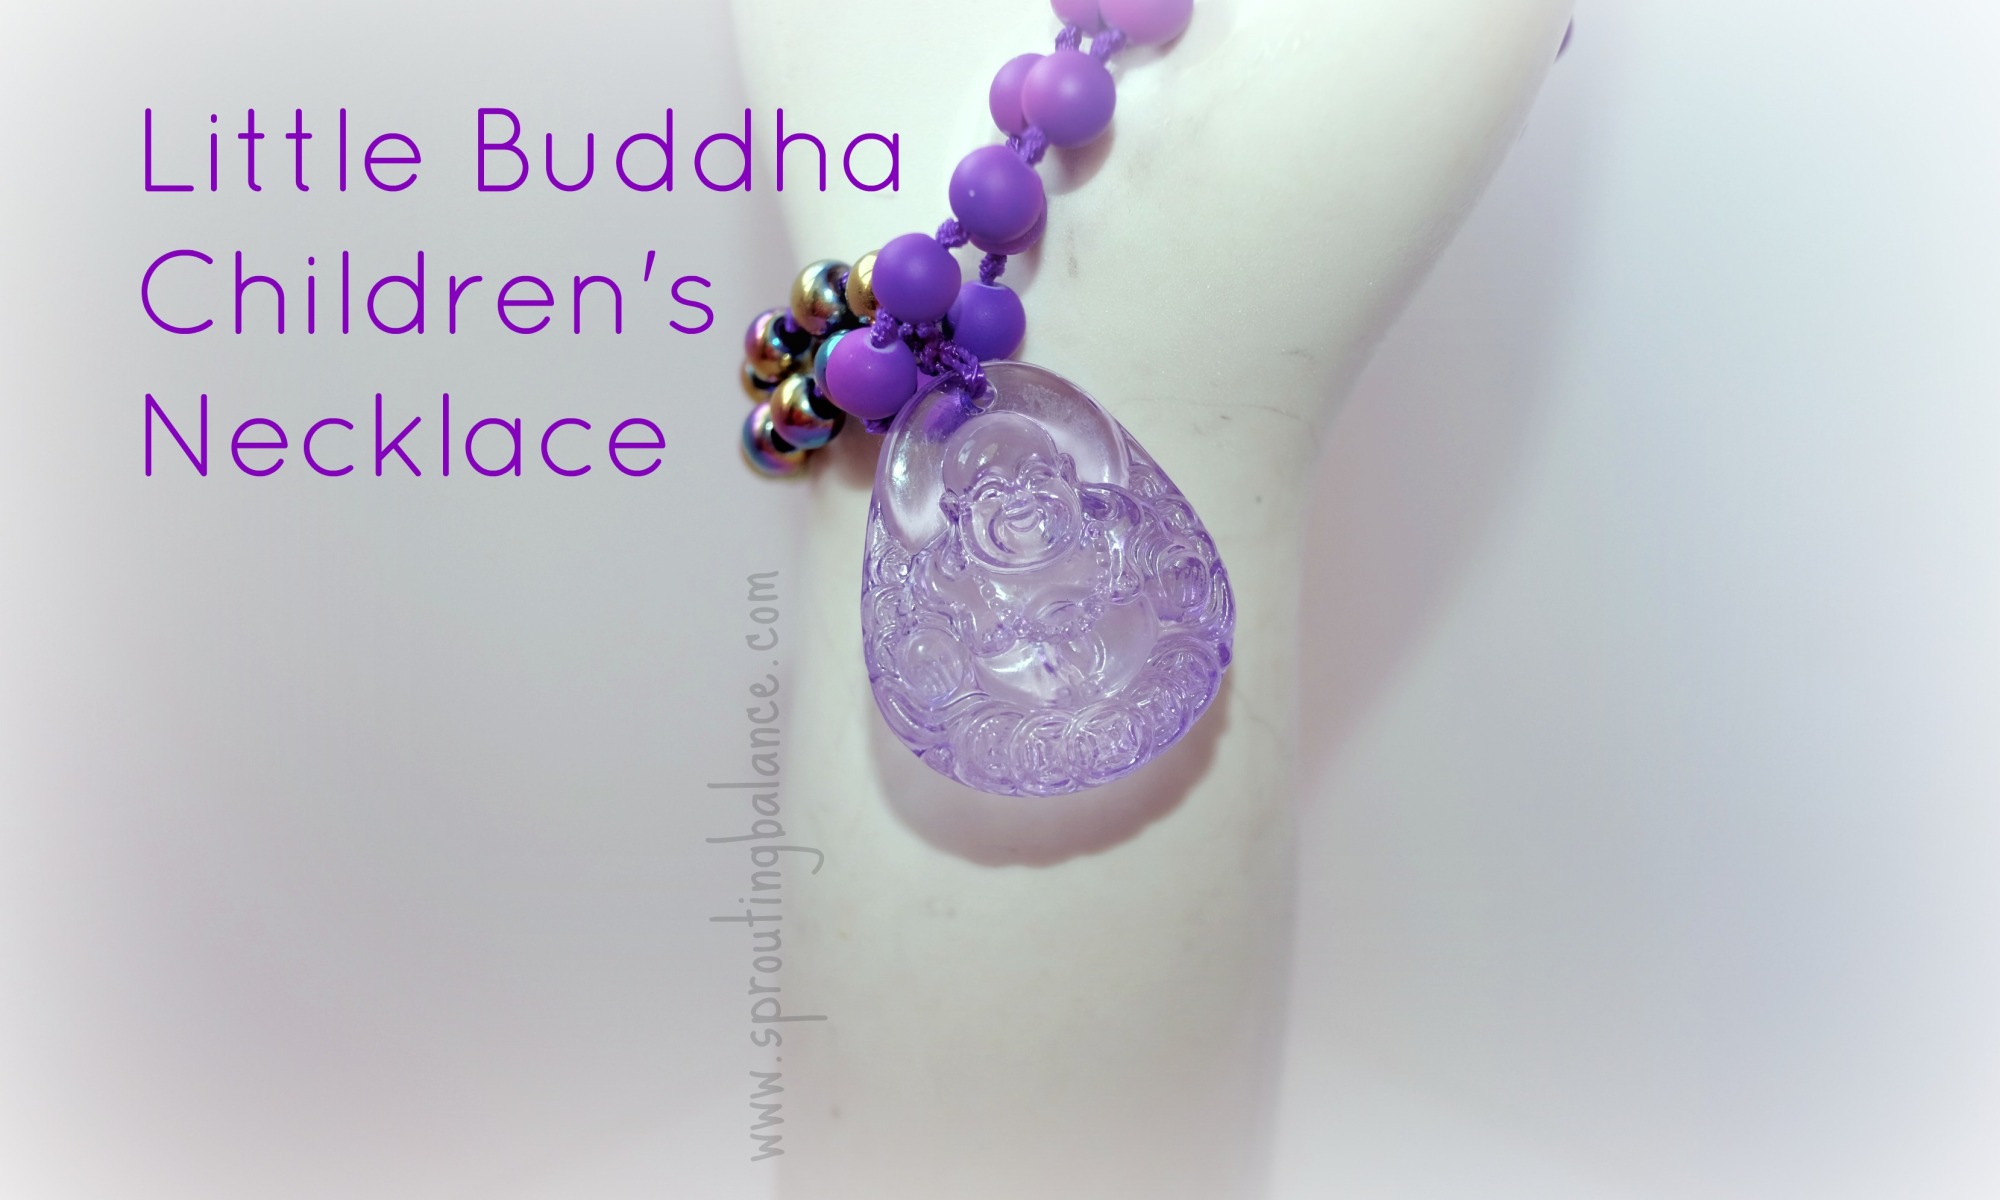 Little Buddha Children's Necklace | www.sproutingbalance.com | #Buddha #Yoga #Necklace #Children #Meditation